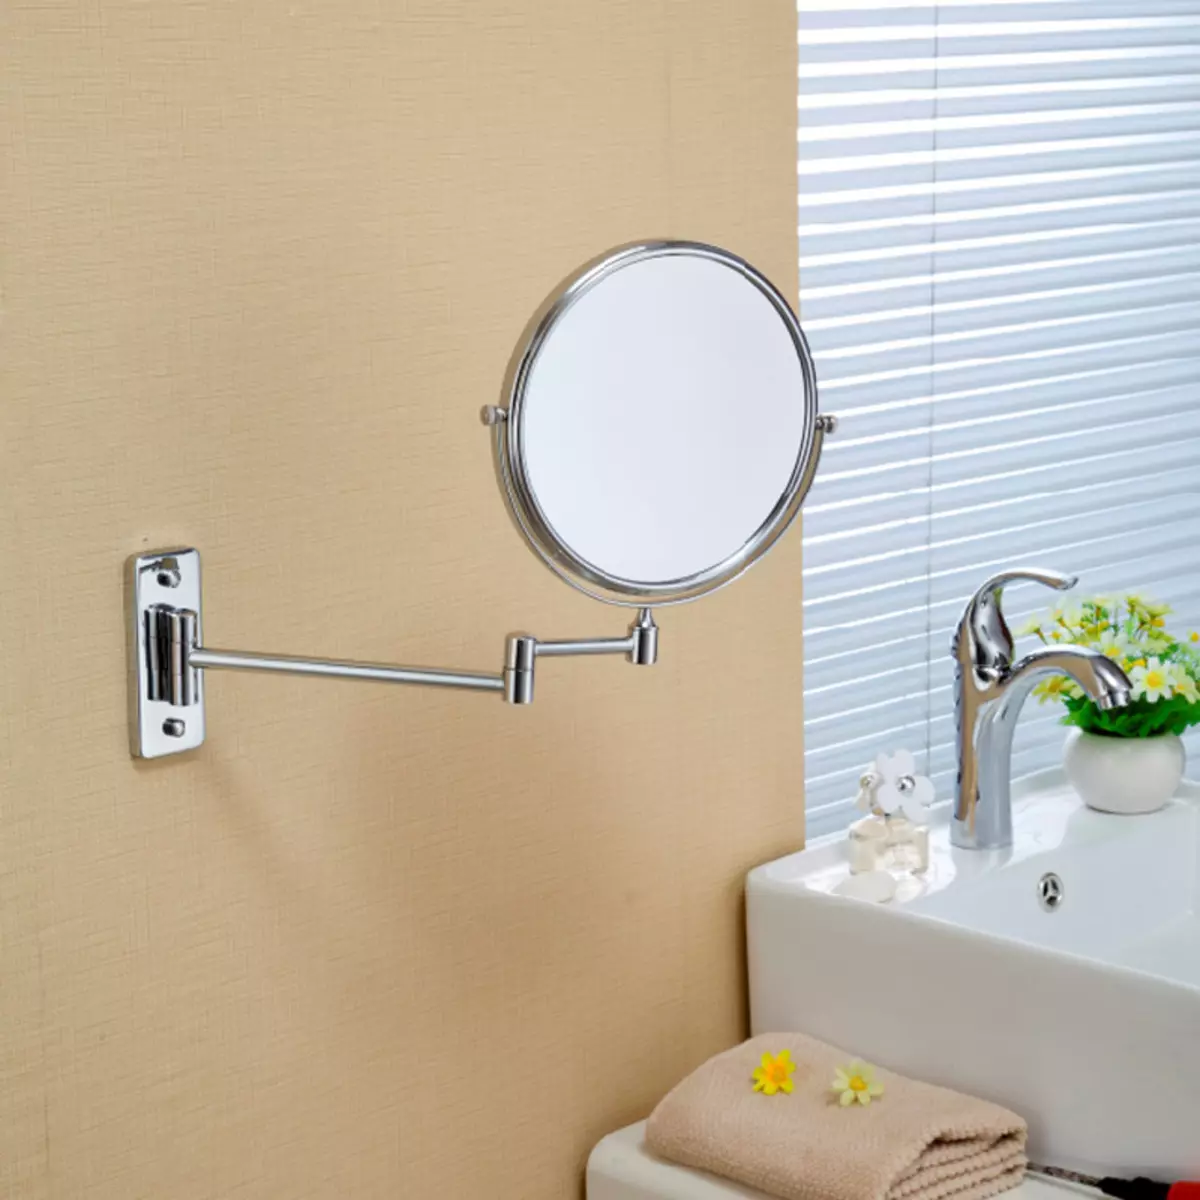 Miroir rond dans la salle de bain: miroirs design dans un cadre en bois, miroirs ronds de couleur noire et autre pour la salle de bain 10427_28